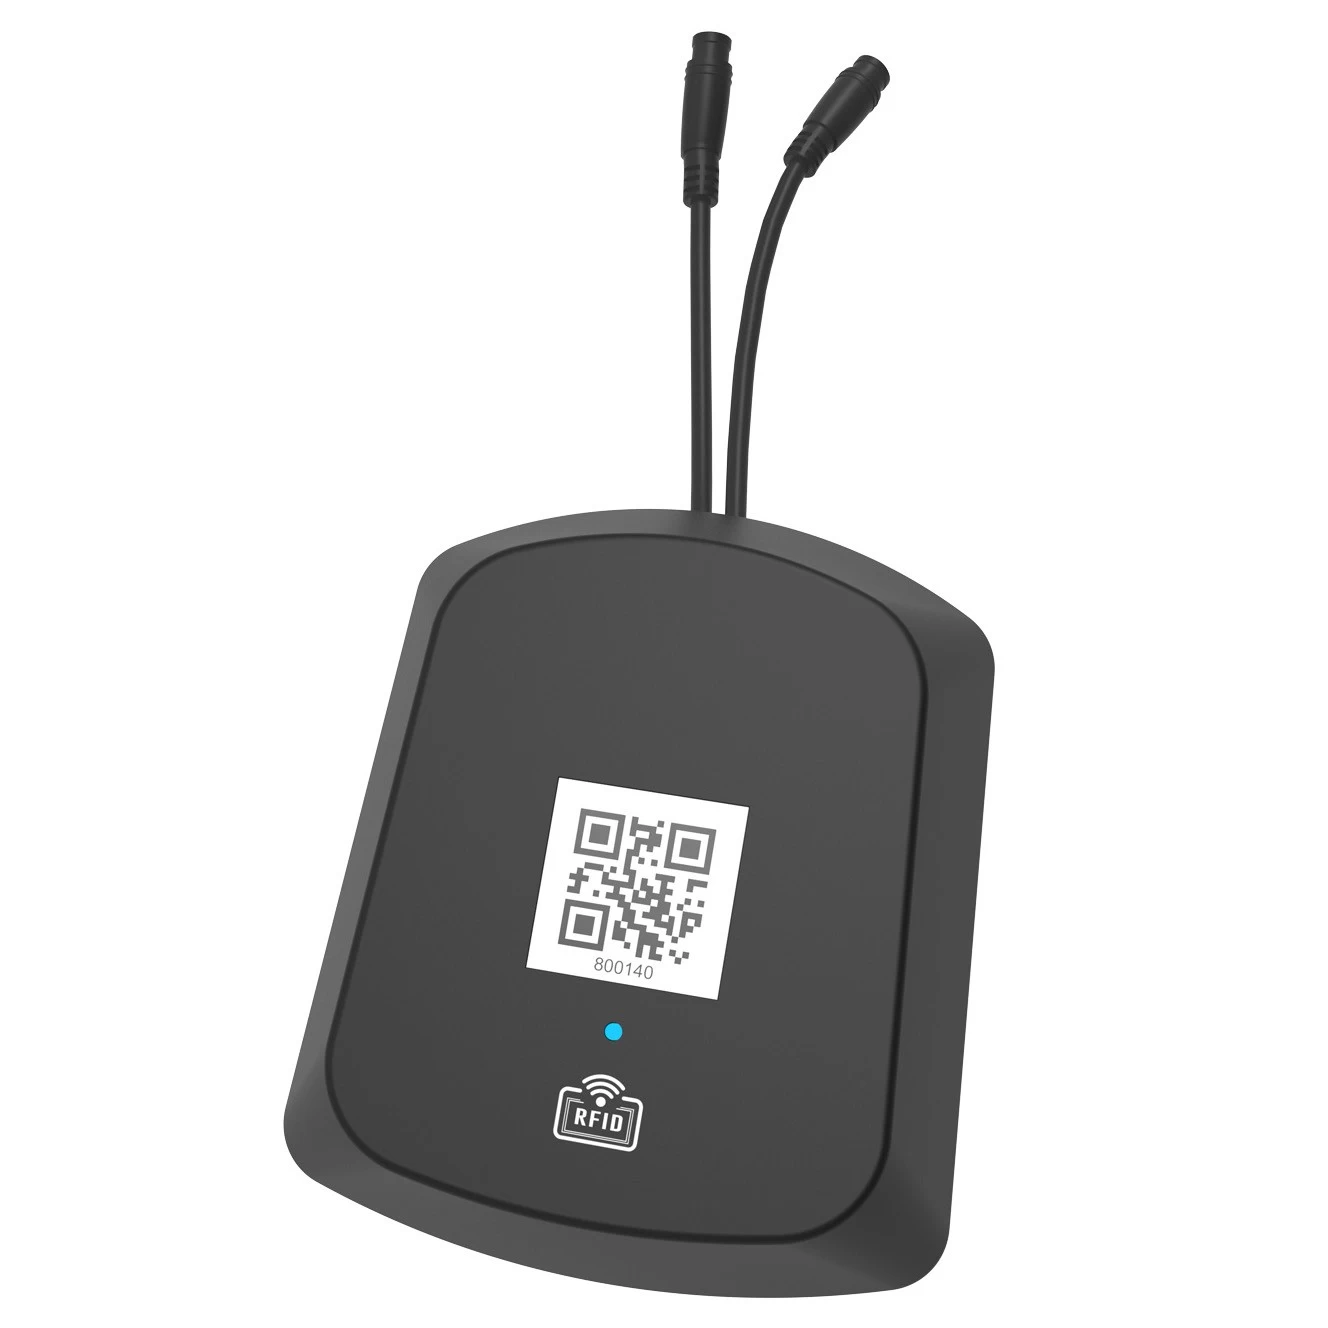 Dispositivo M136 IoT para sistema de compartilhamento de bicicletas Aluguel de bicicletas E-bikes QR desbloqueio e bloqueio com sistema de rastreamento GPS